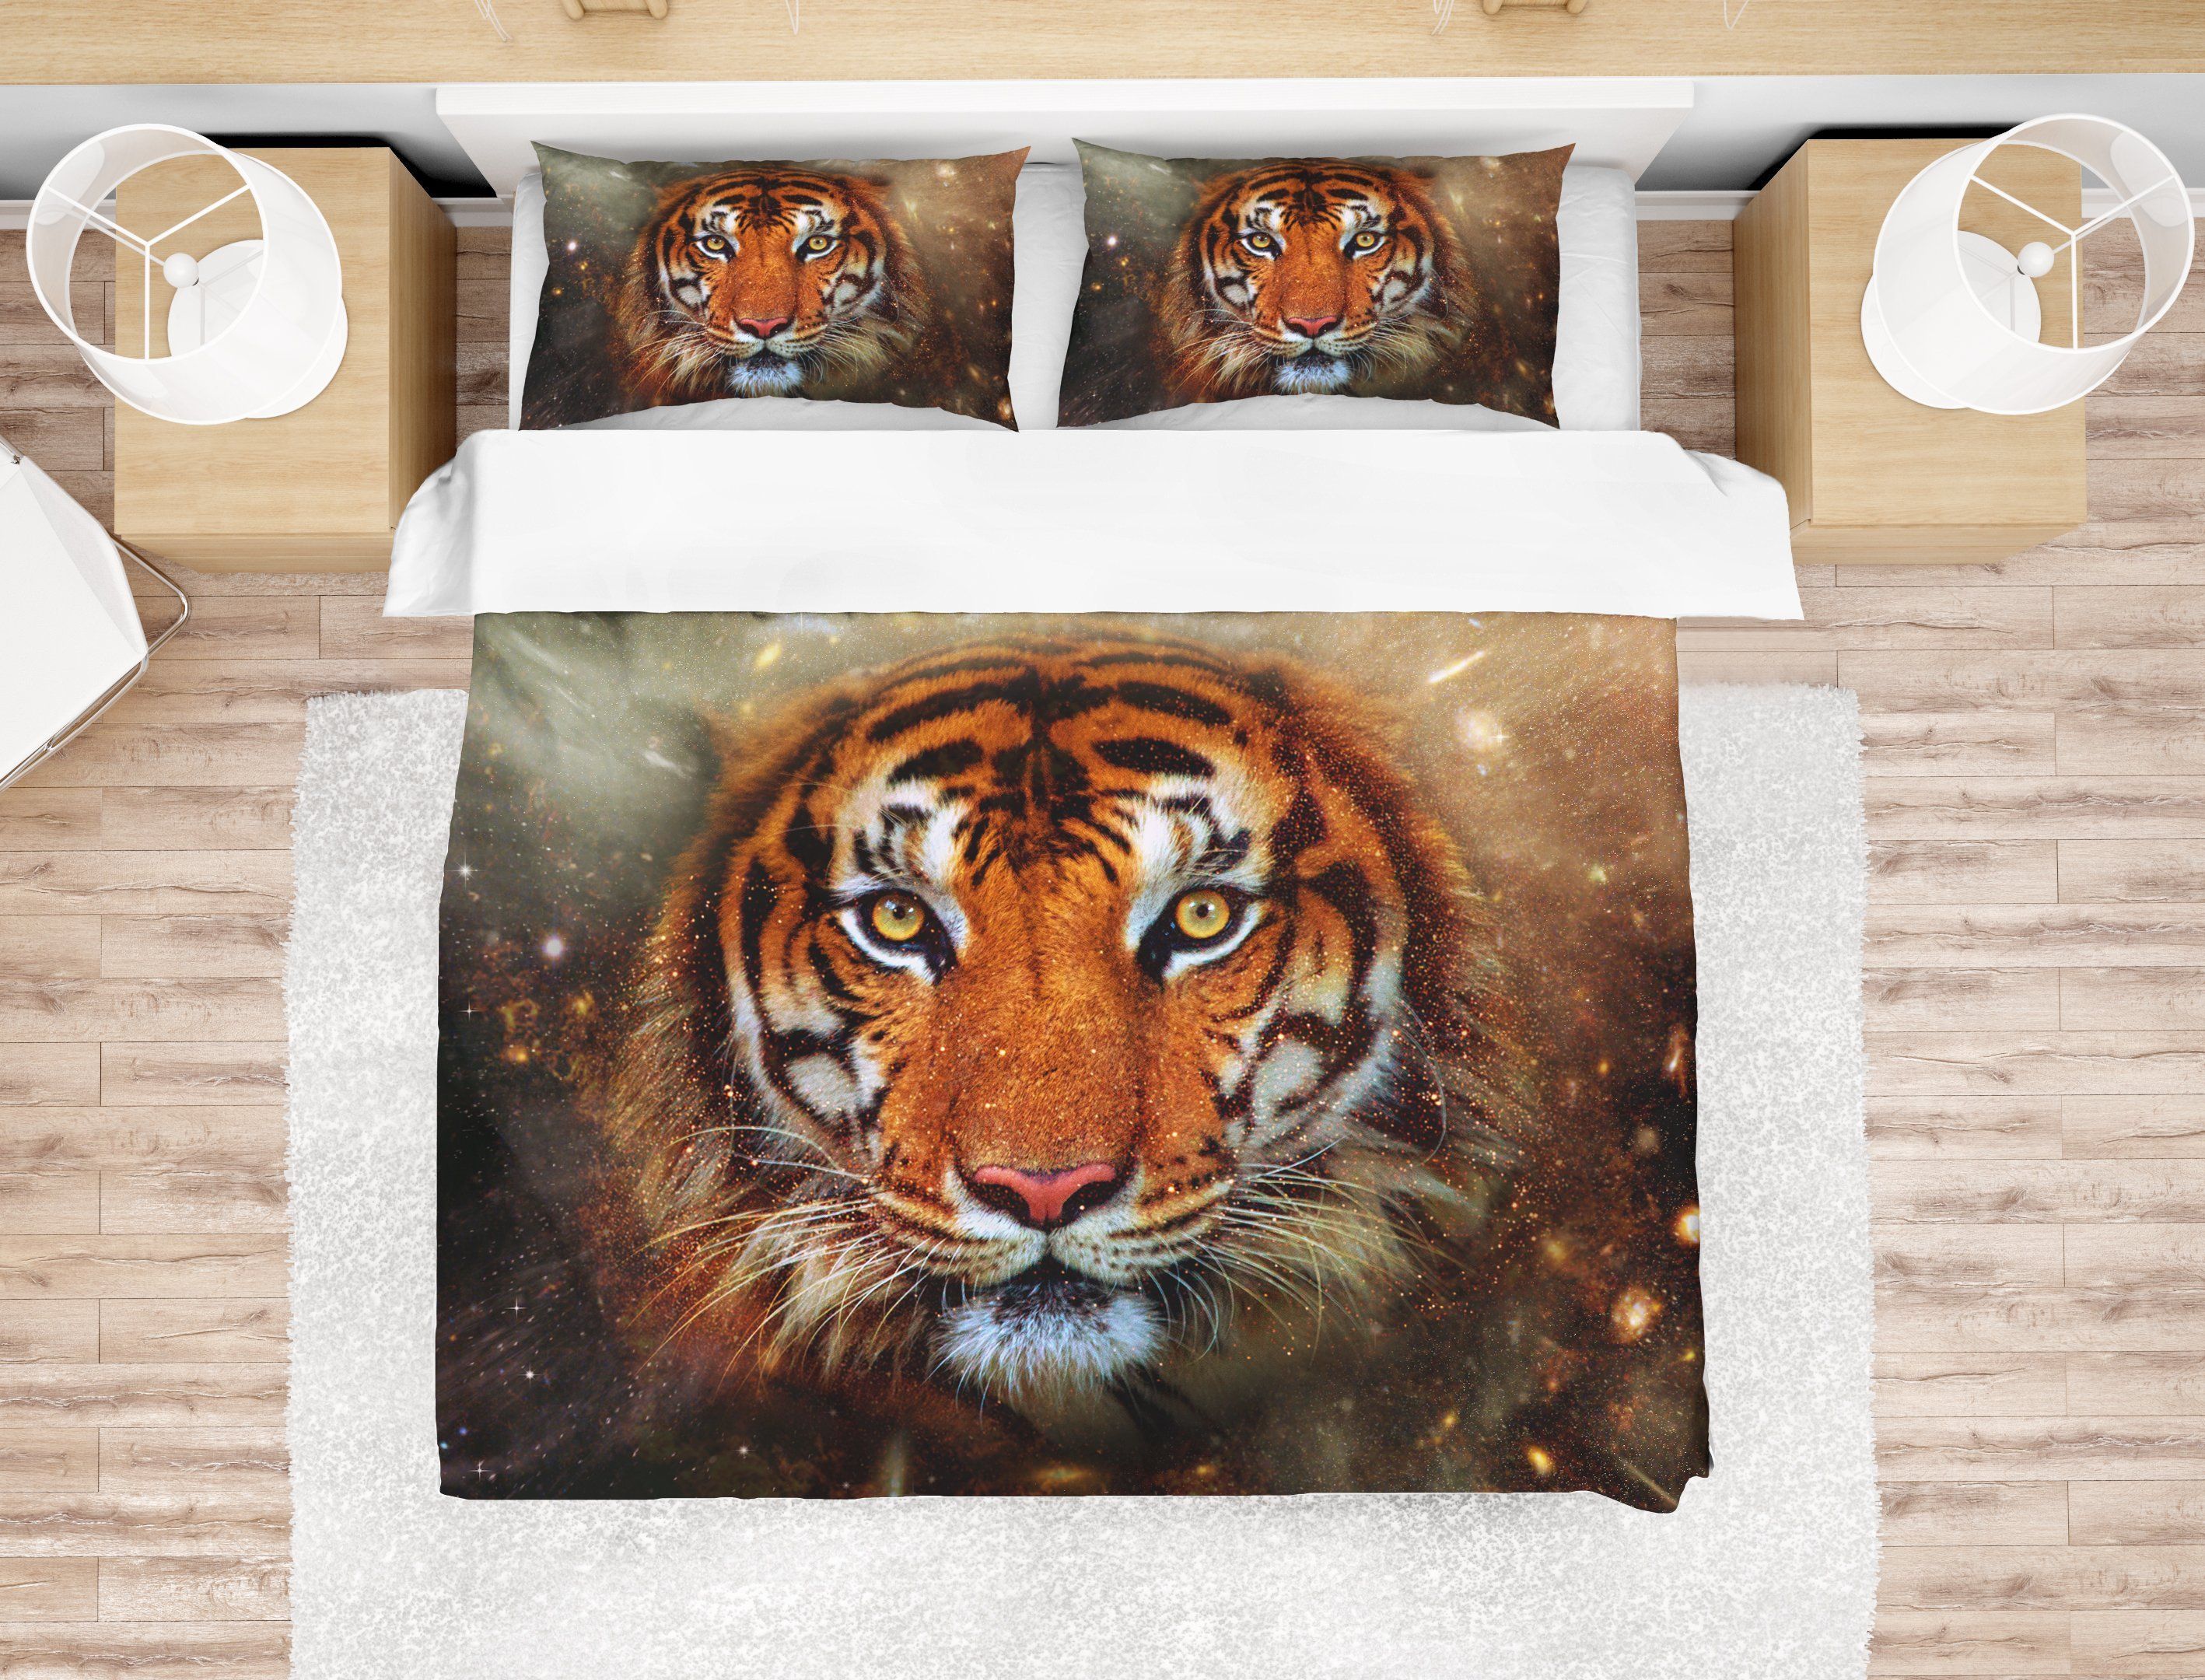 3d tiger face bedding set bedroom decor 8757 scaled